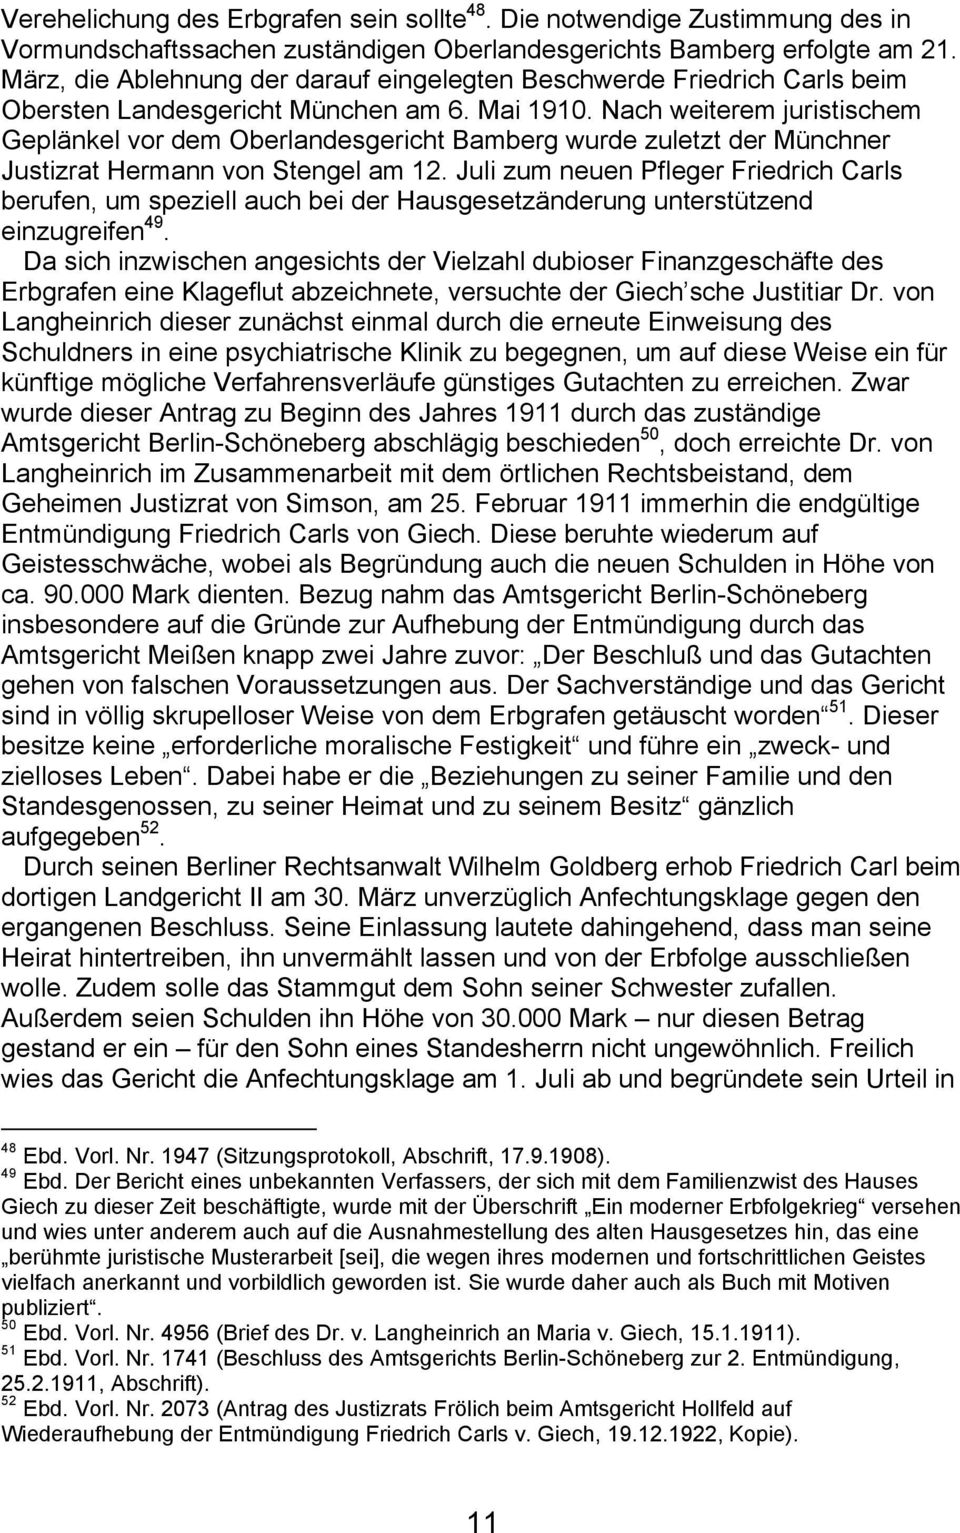 Nach weiterem juristischem GeplÇnkel vor dem Oberlandesgericht Bamberg wurde zuletzt der MÉnchner Justizrat Hermann von Stengel am 12.